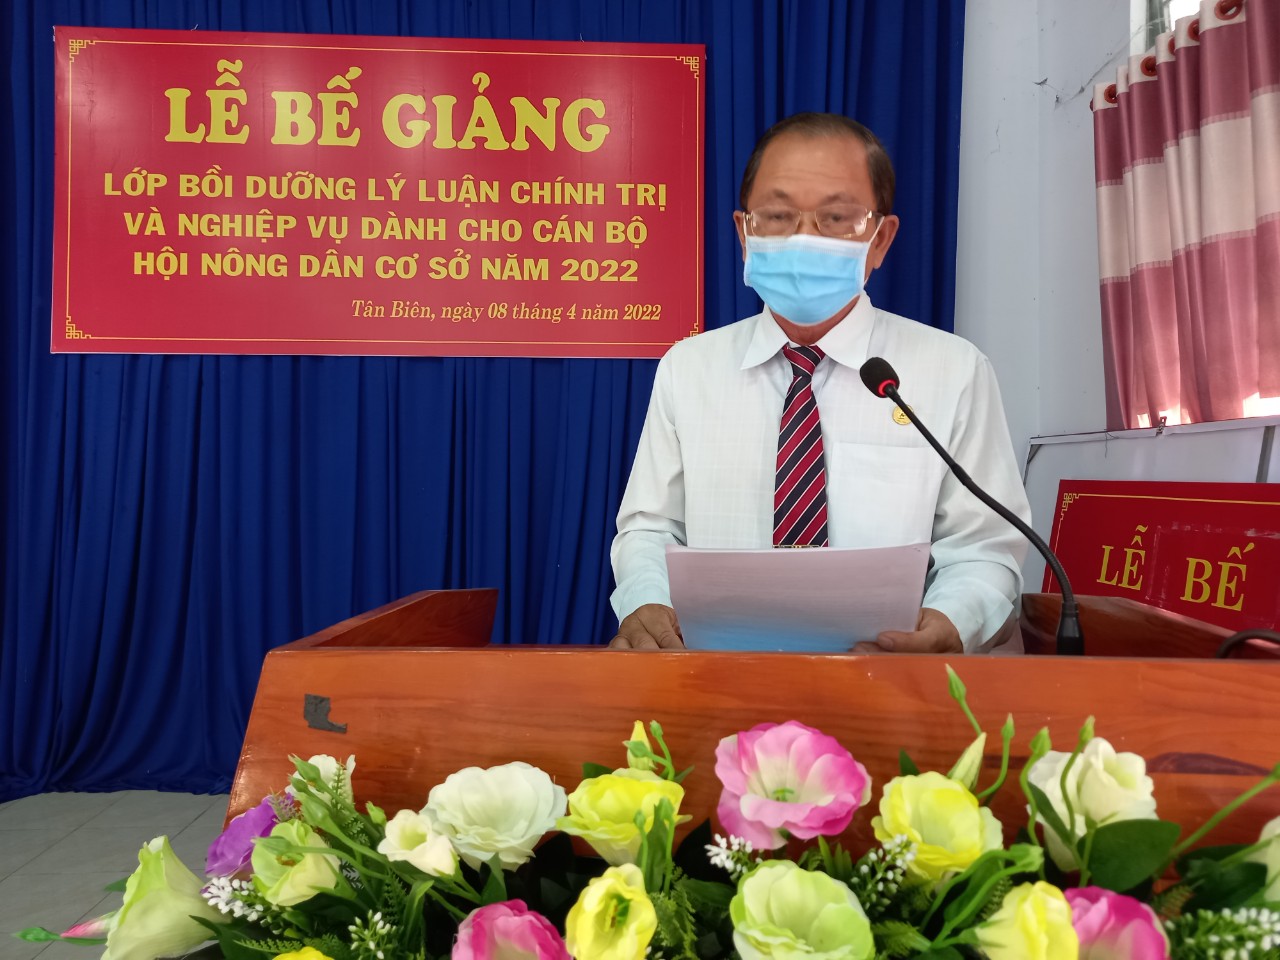 Hình ông Trần Văn Ghe Phó trưởng Ban Tuyên giáo Huyện ủy phát biểu bế giảng lớp học